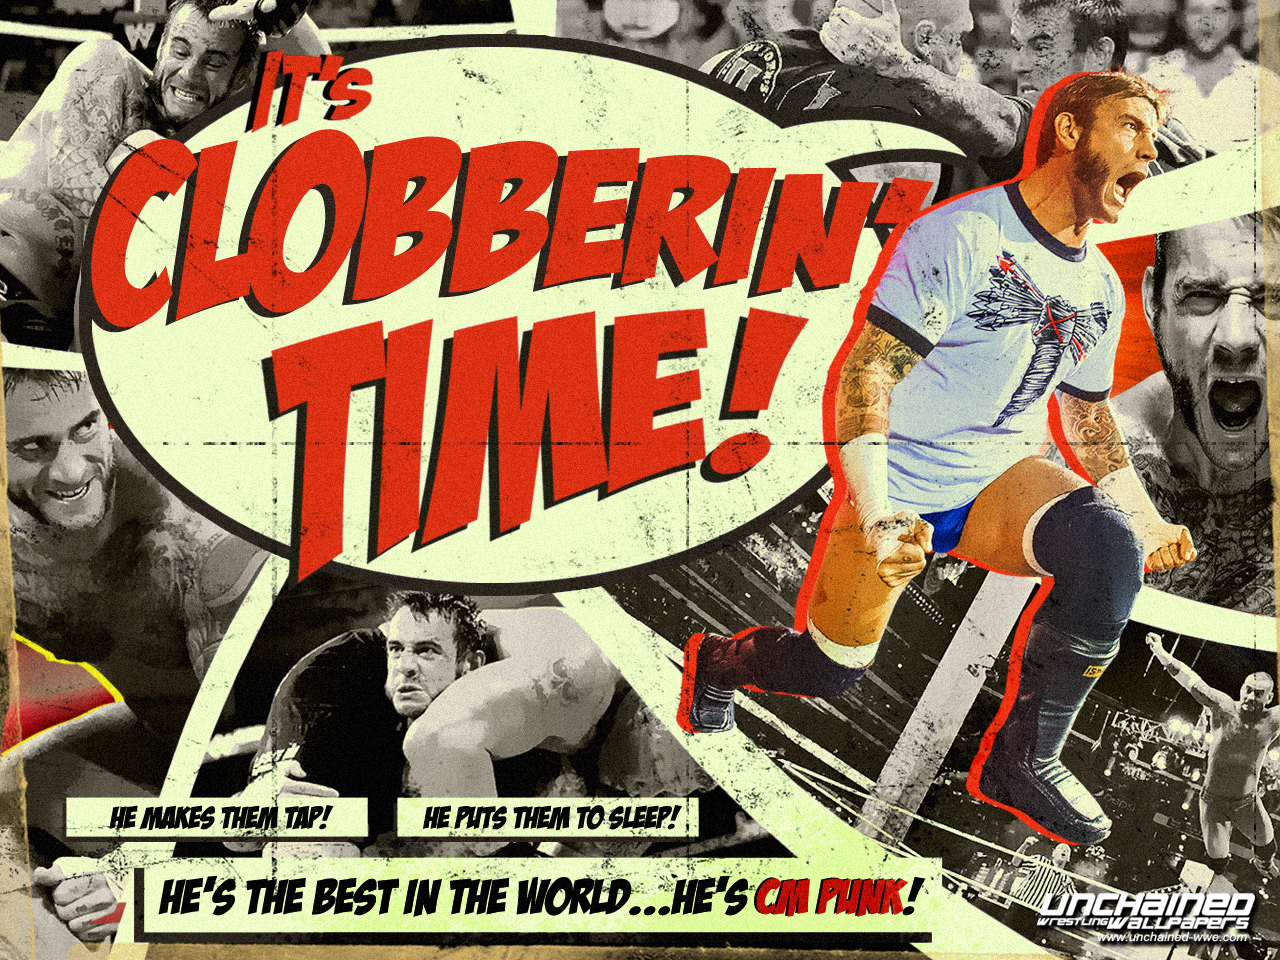 Cm Punk - It's Clobberin Time Wwe - HD Wallpaper 